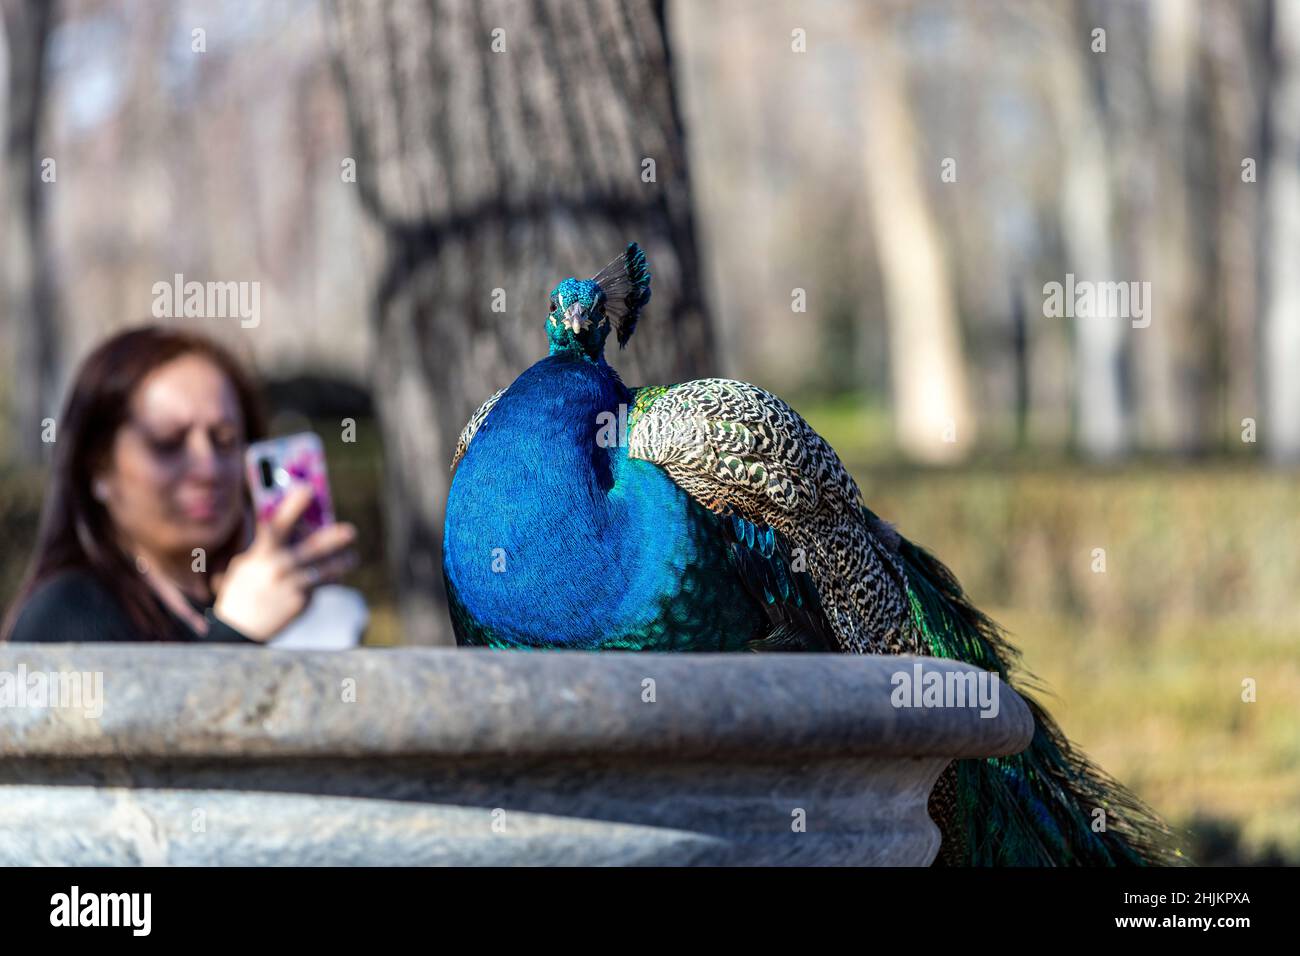 Femme prenant une photo avec son mobile à un Peafowl, Jardín de la Isla , Aranjuez, Madrid, Espagne Banque D'Images